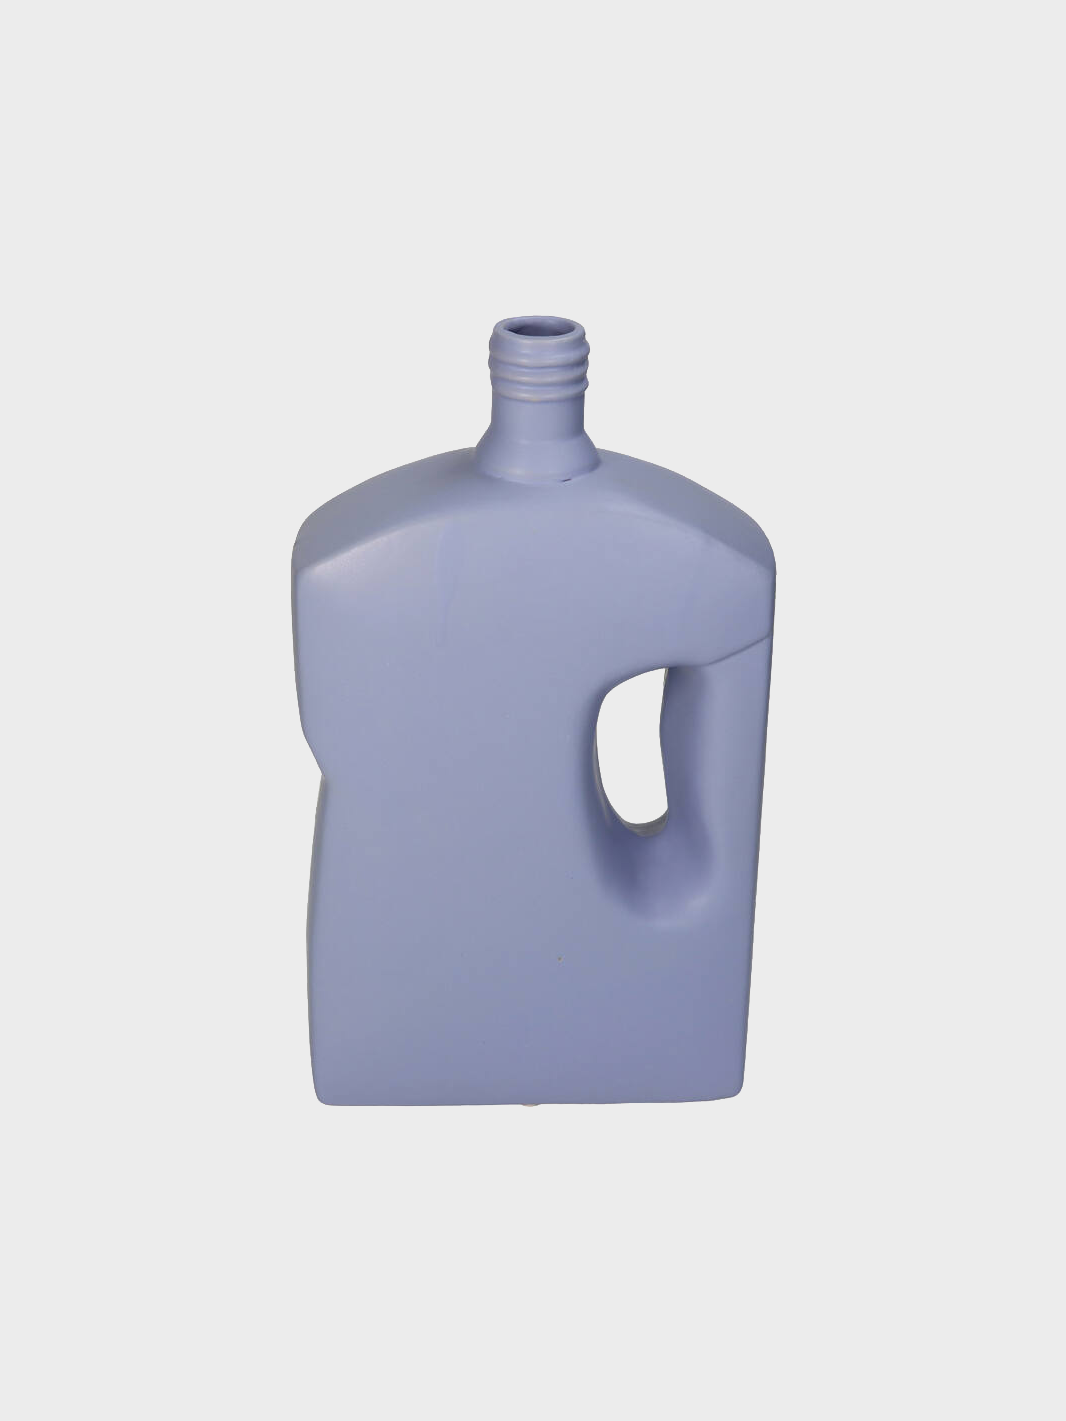 Edged Bottle Vase